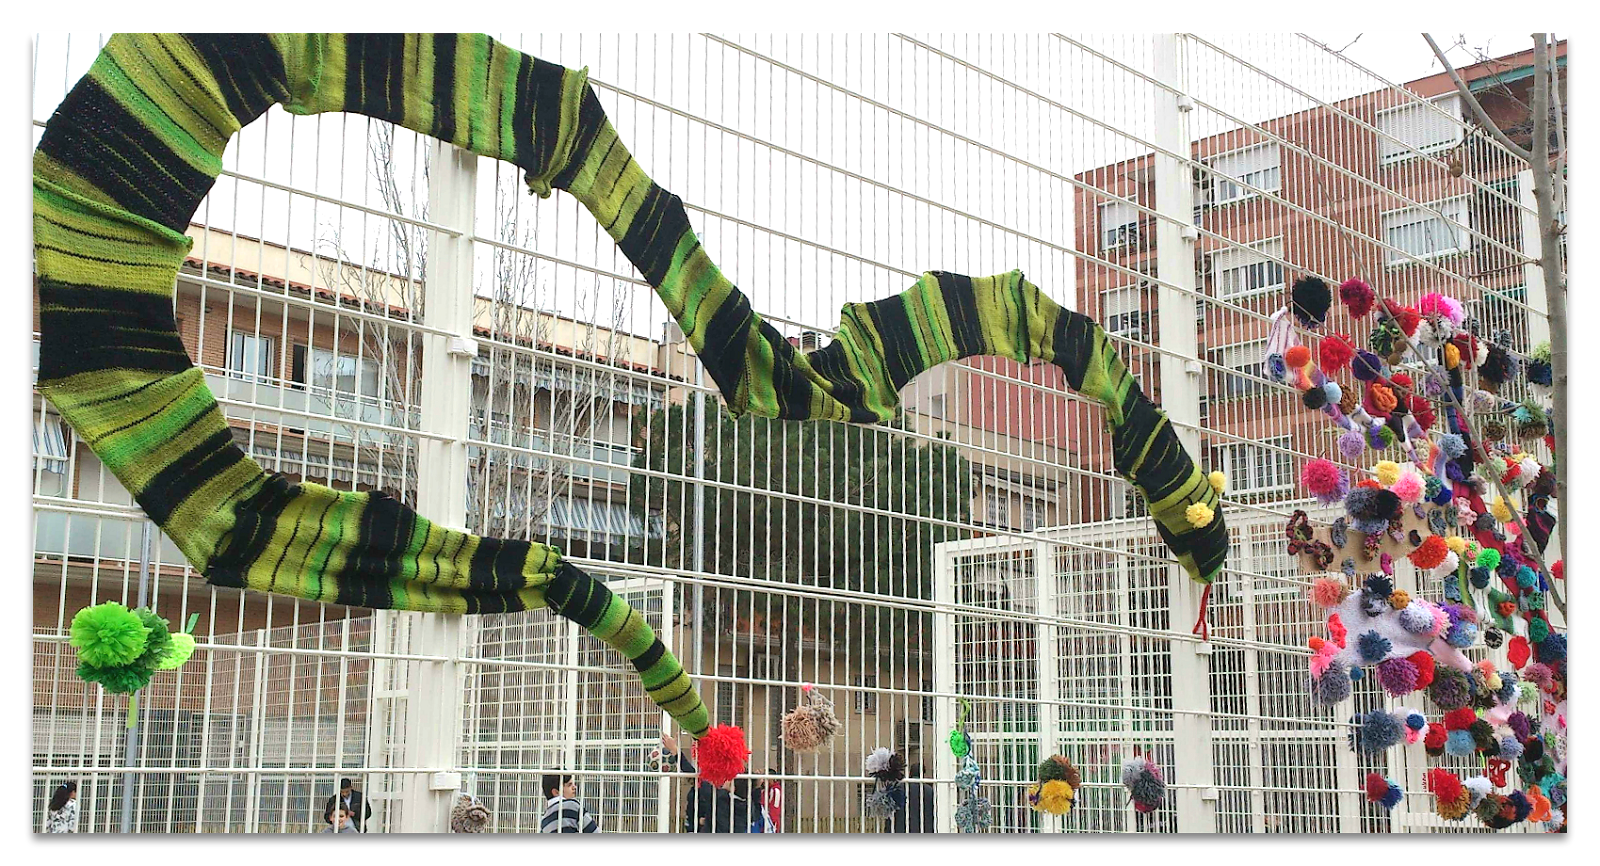 serpiente-hecha-con-retales-de-lana-en-tonos-verdes